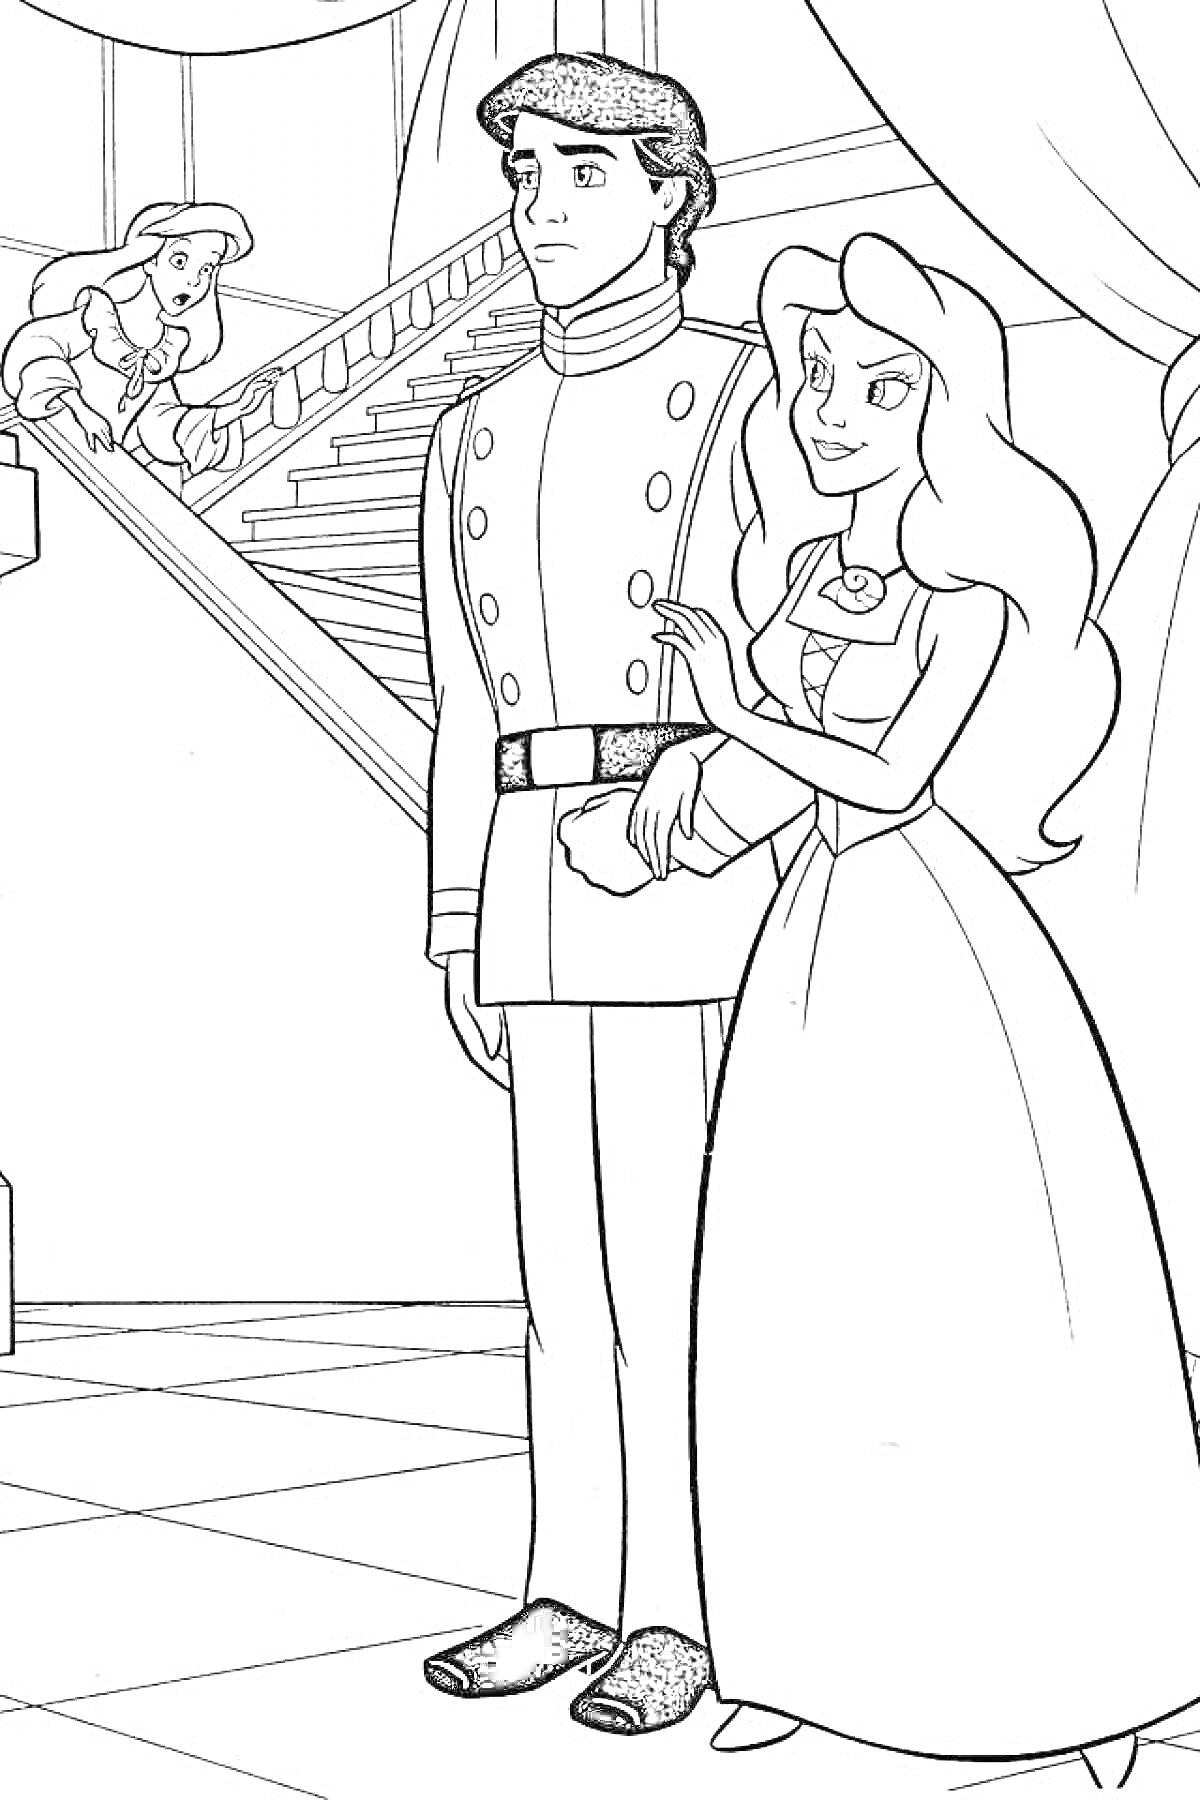 Раскраска Ариэль и Принц Эрик у лестницы с наблюдающей фигурой на фоне